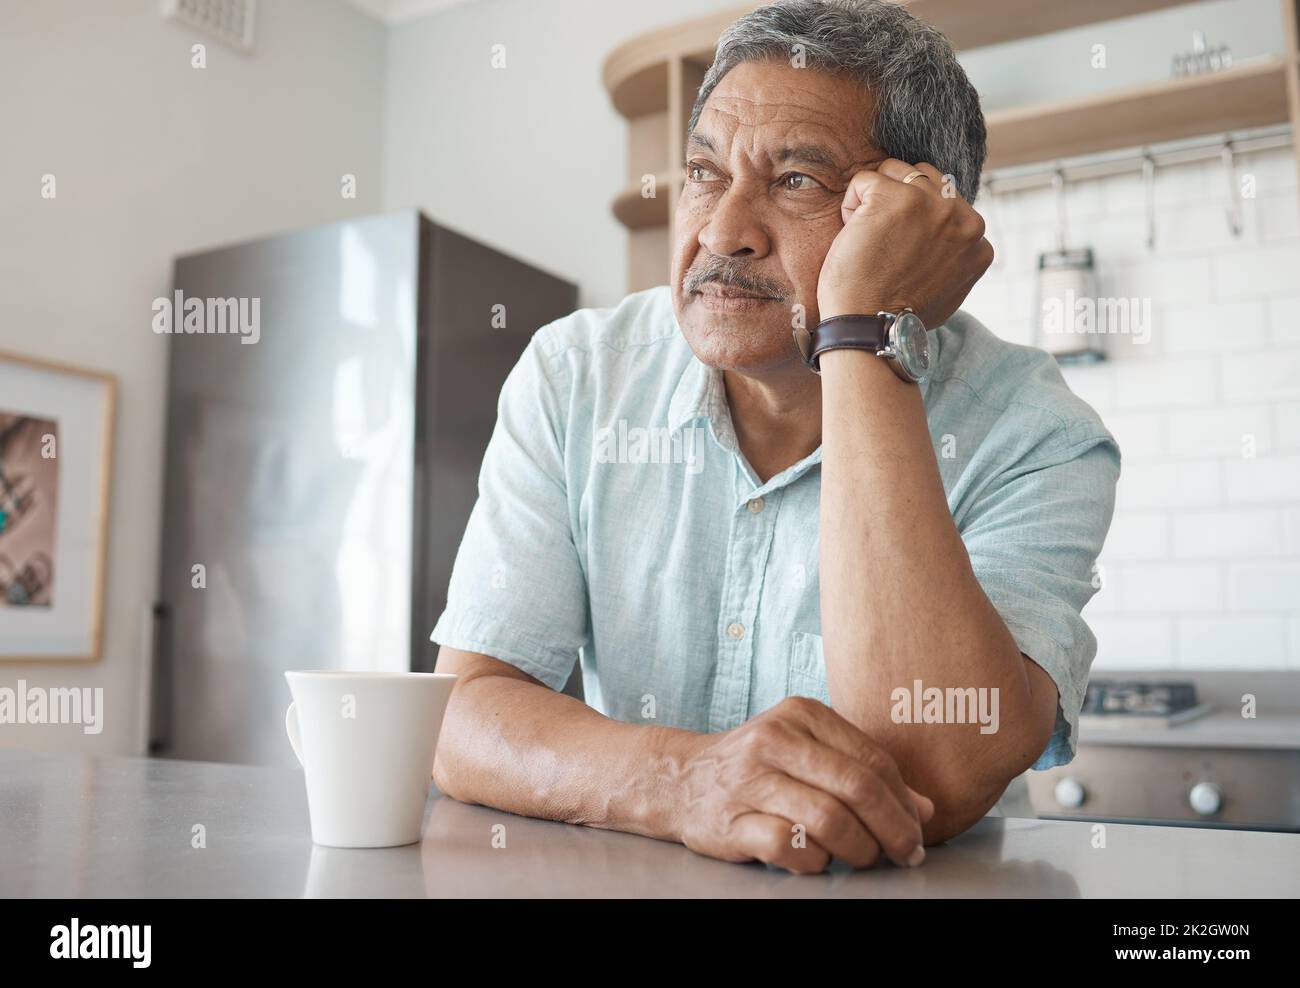 Allein zu sein wird einsam. Aufnahme eines älteren Mannes, der nachdenklich aussass, während er zu Hause Kaffee trank. Stockfoto